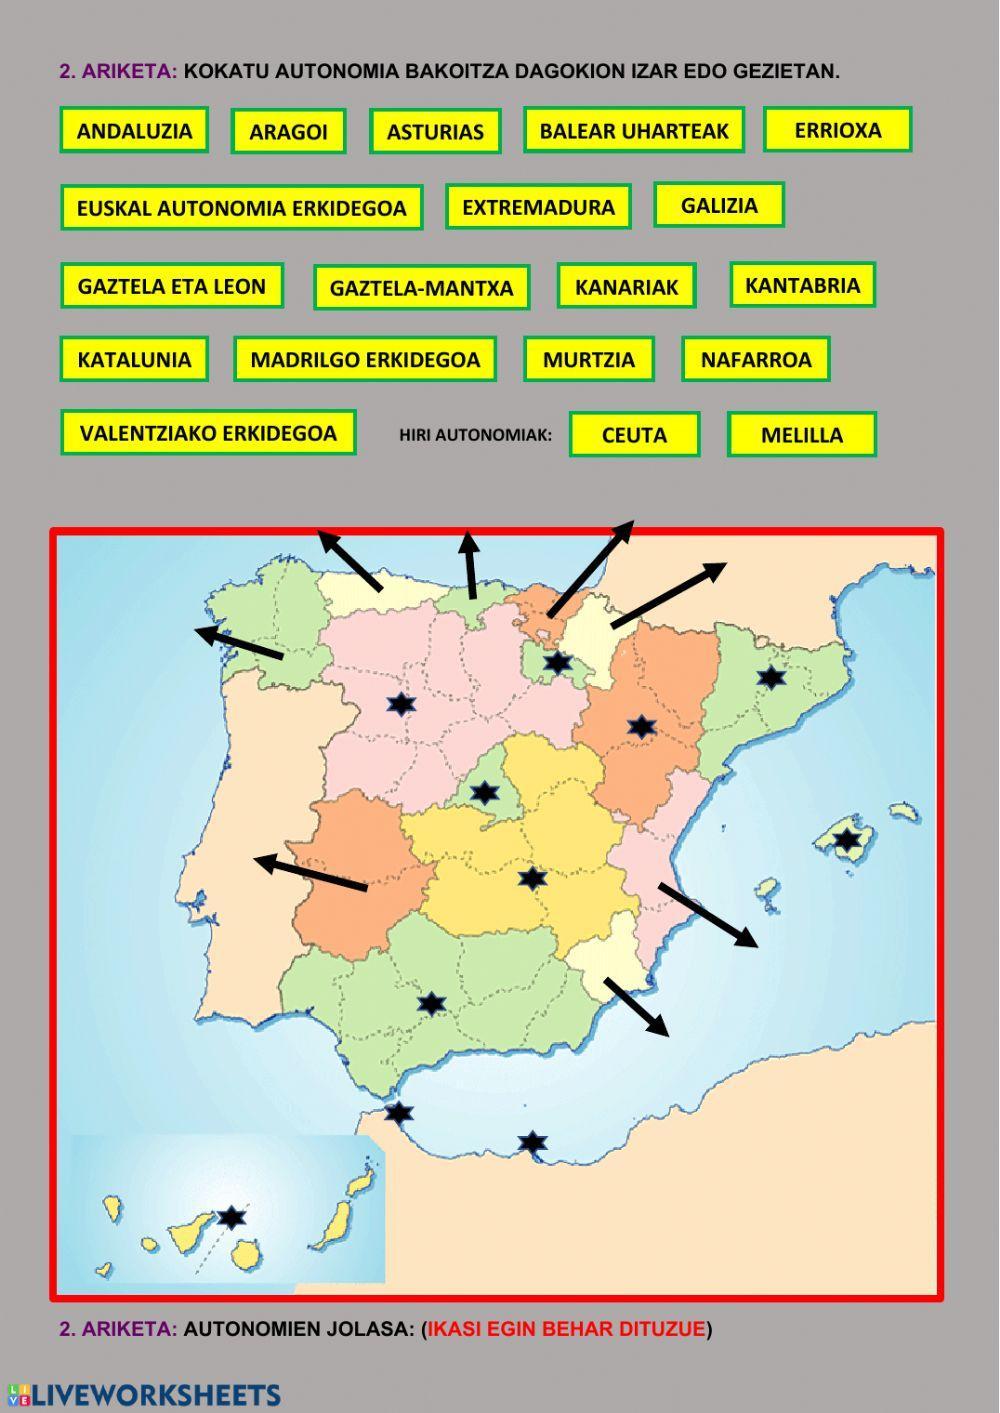 Espainiako autonomiak